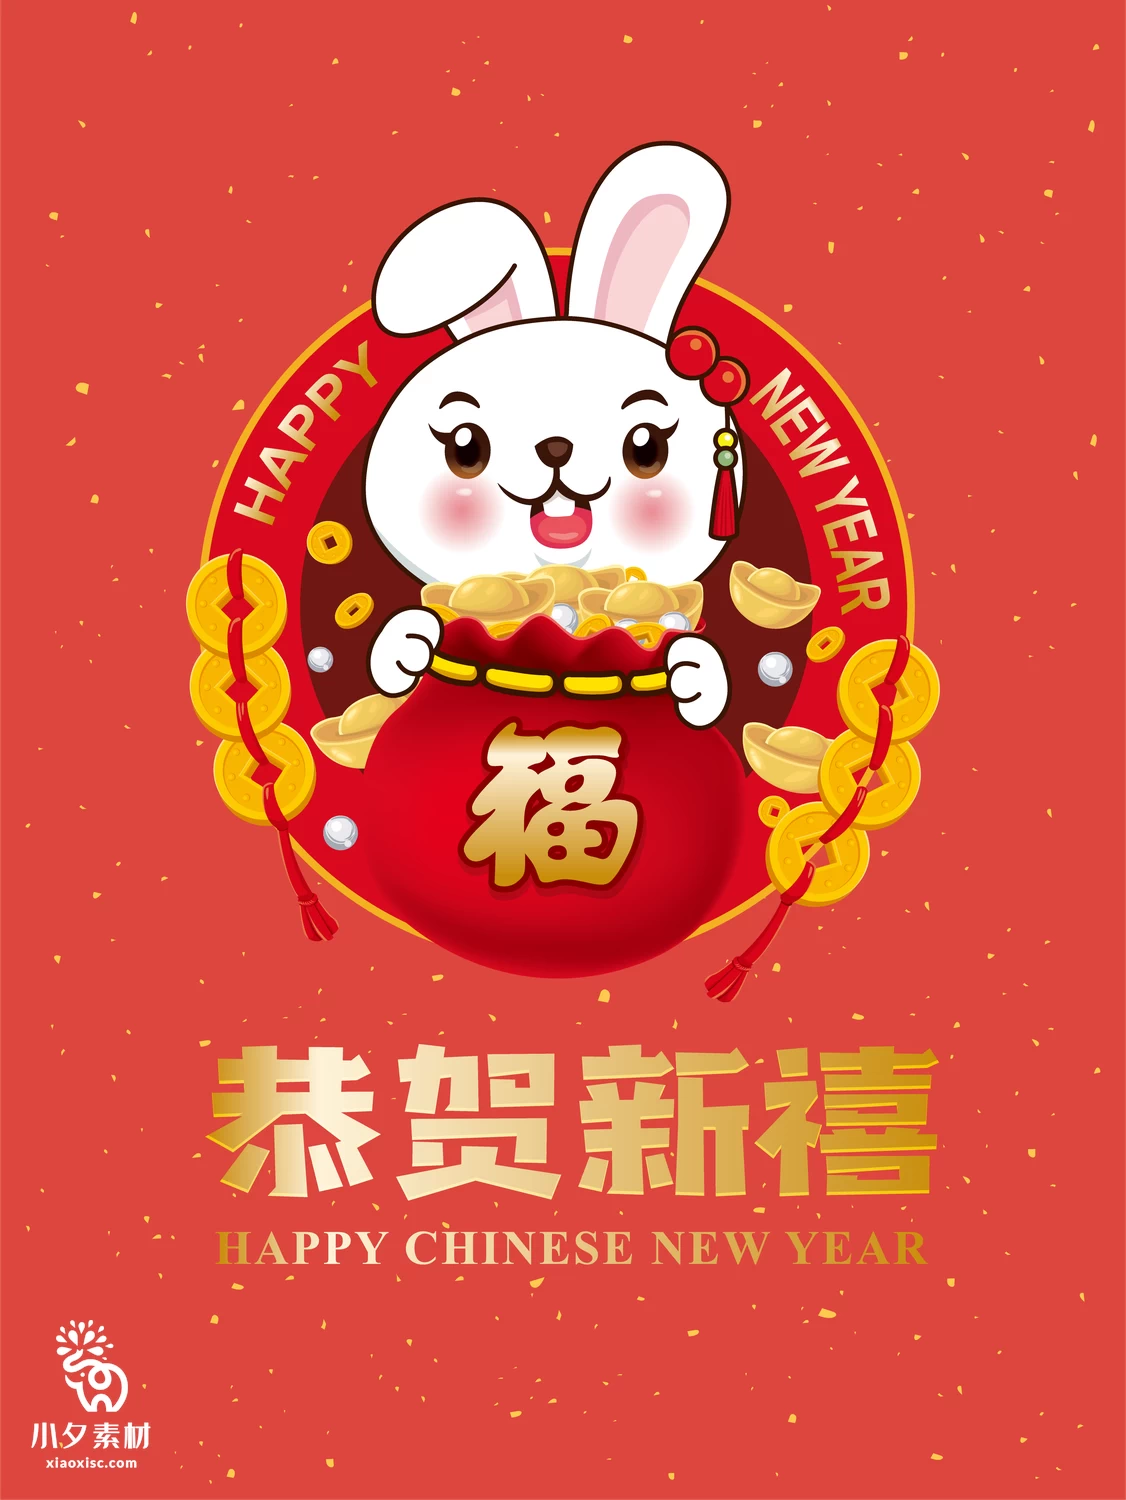 2023年兔年恭贺新春新年快乐喜庆节日宣传海报图片AI矢量设计素材【008】